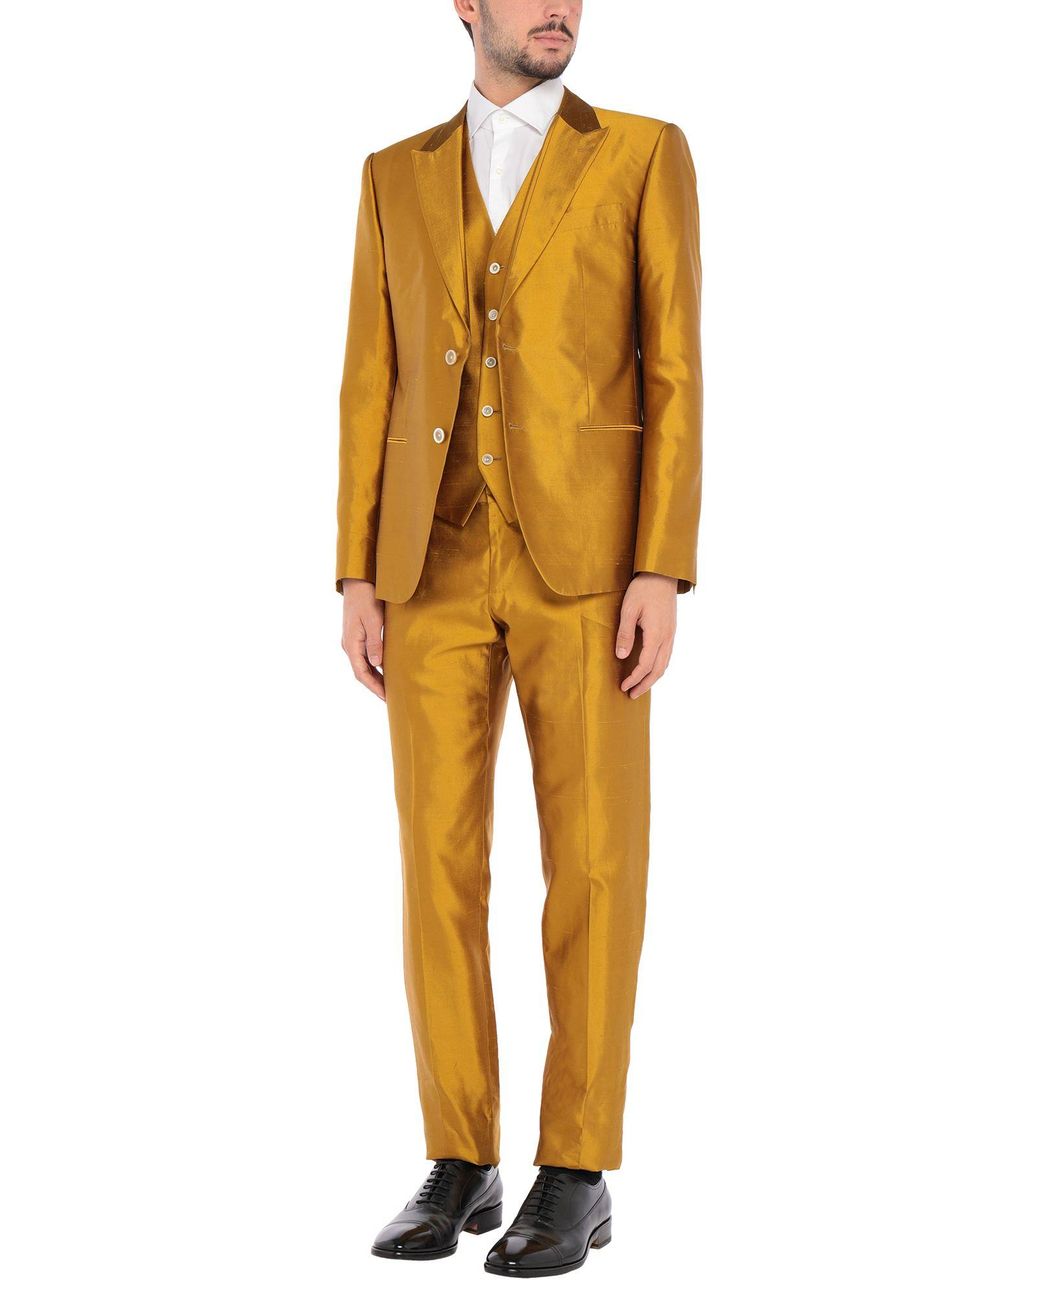 Buy Men Suits Mustard 2 Piece Suits, Men Slim Fit Suits, Men Designer Suits,  Formal Suits, Dinner Suits, Wedding Groom Suits, Bespoke for Men Online in  India - Etsy